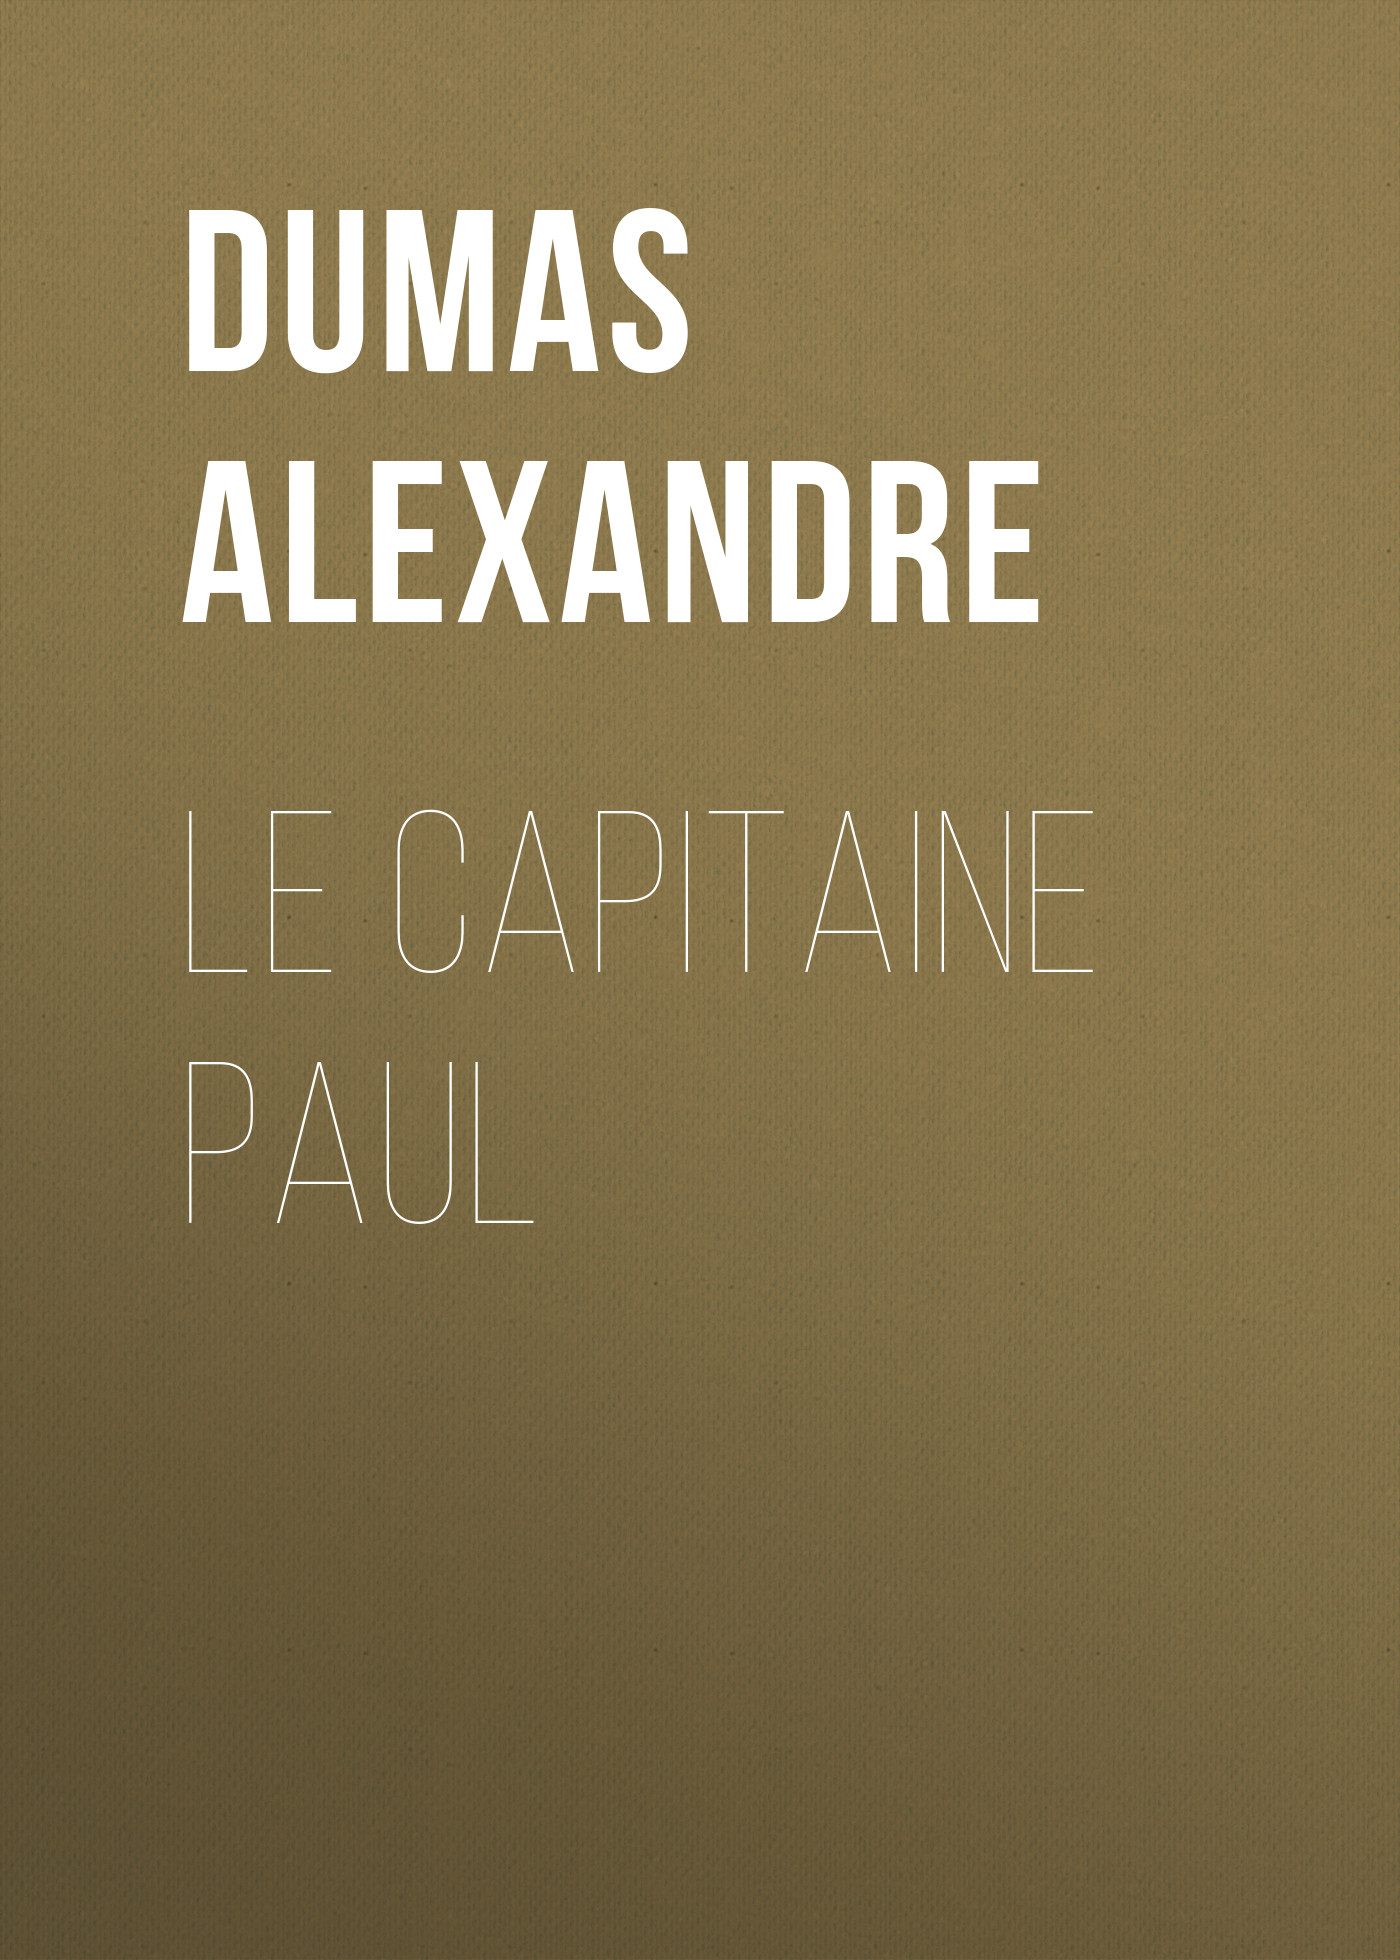 Книга Le capitaine Paul из серии , созданная Alexandre Dumas, может относится к жанру Литература 19 века, Зарубежная старинная литература, Зарубежная классика. Стоимость электронной книги Le capitaine Paul с идентификатором 25202519 составляет 0 руб.